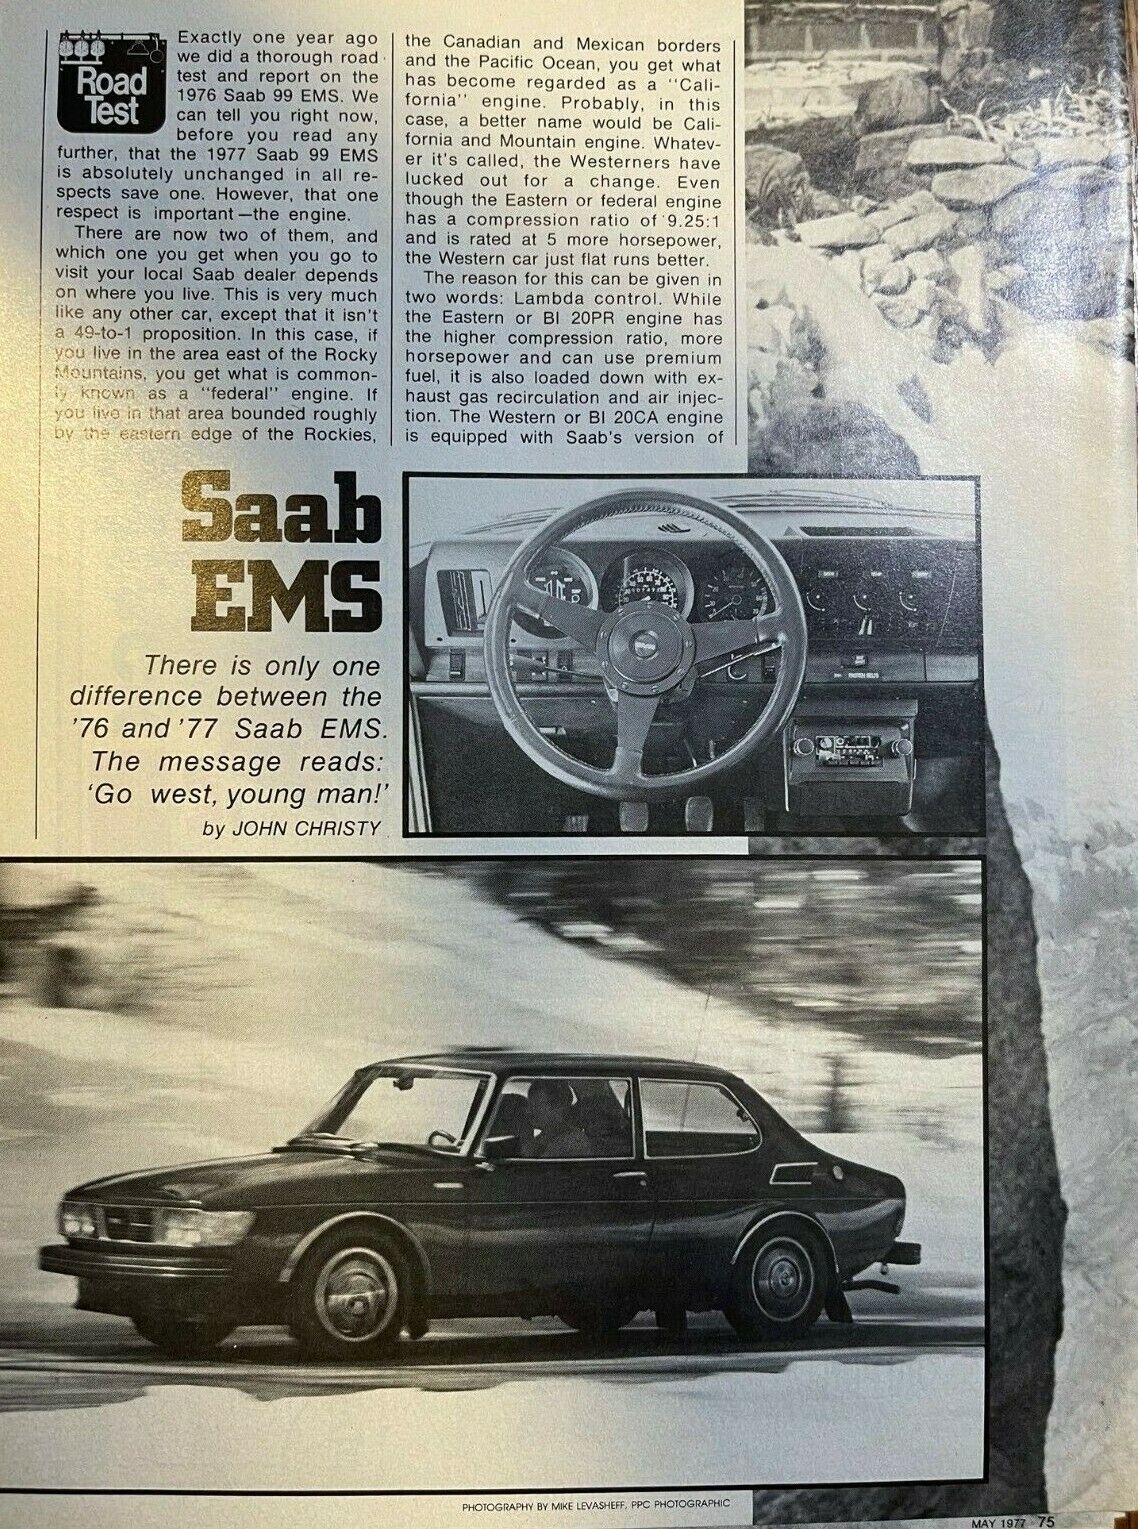  Road Test 1977 Saab EMS illustrated